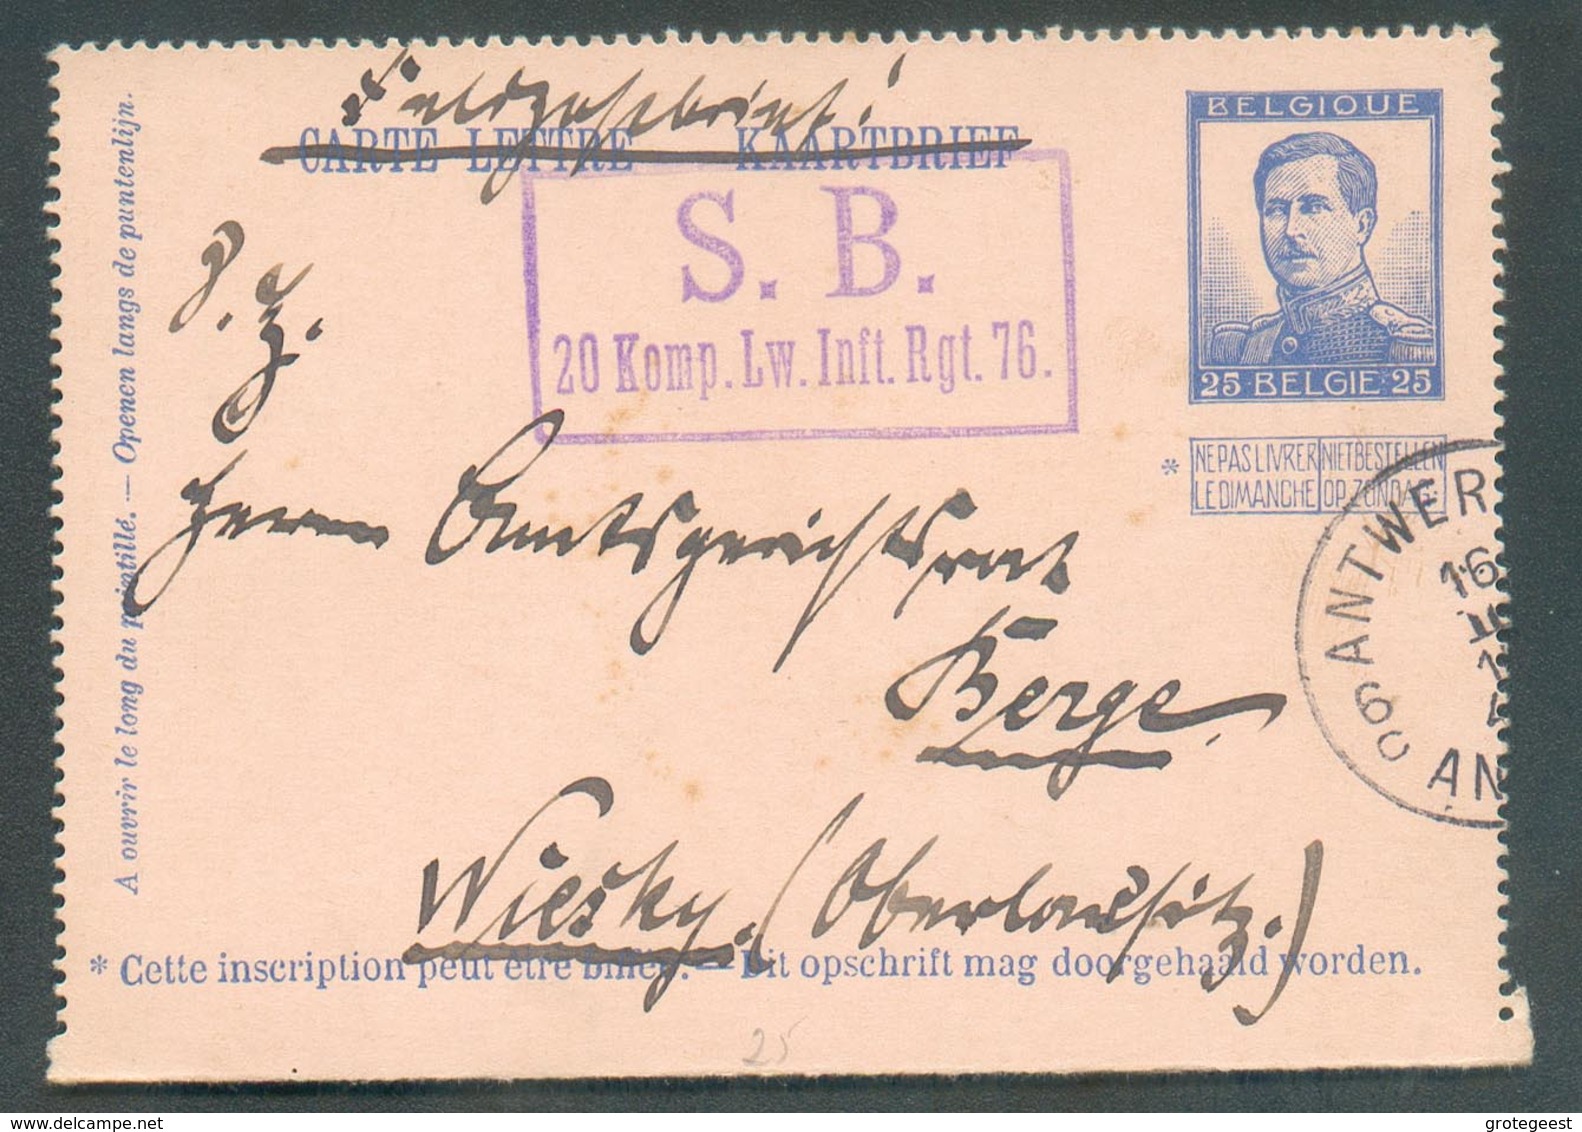 E.P. Carte-lettre 25c. Pellens Obl. Sc ANTWERPEN 6 Du 16-II-1915 En Feldpostbrief + Griffe Violette S.B. 20.Komp.Lw.Infl - Cartes-lettres